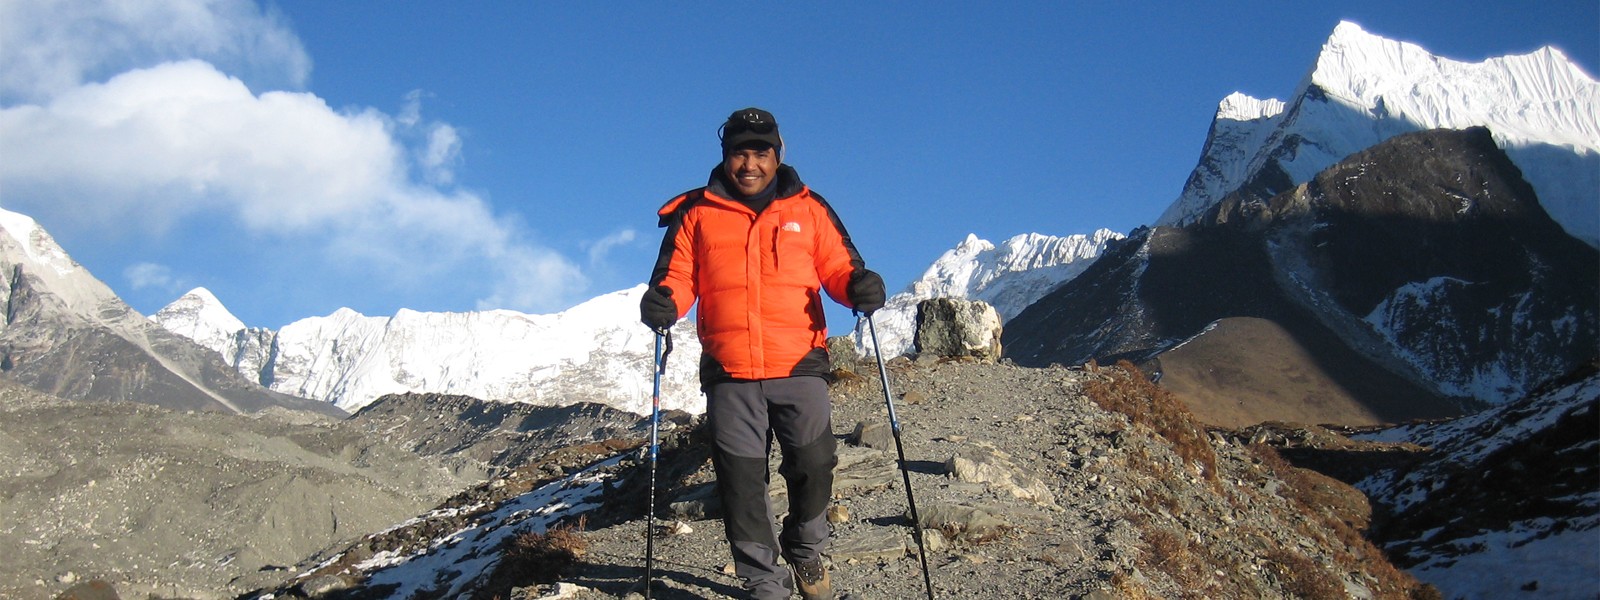 Mera Peak Climbing with Amphu Lapcha Pass Trekking